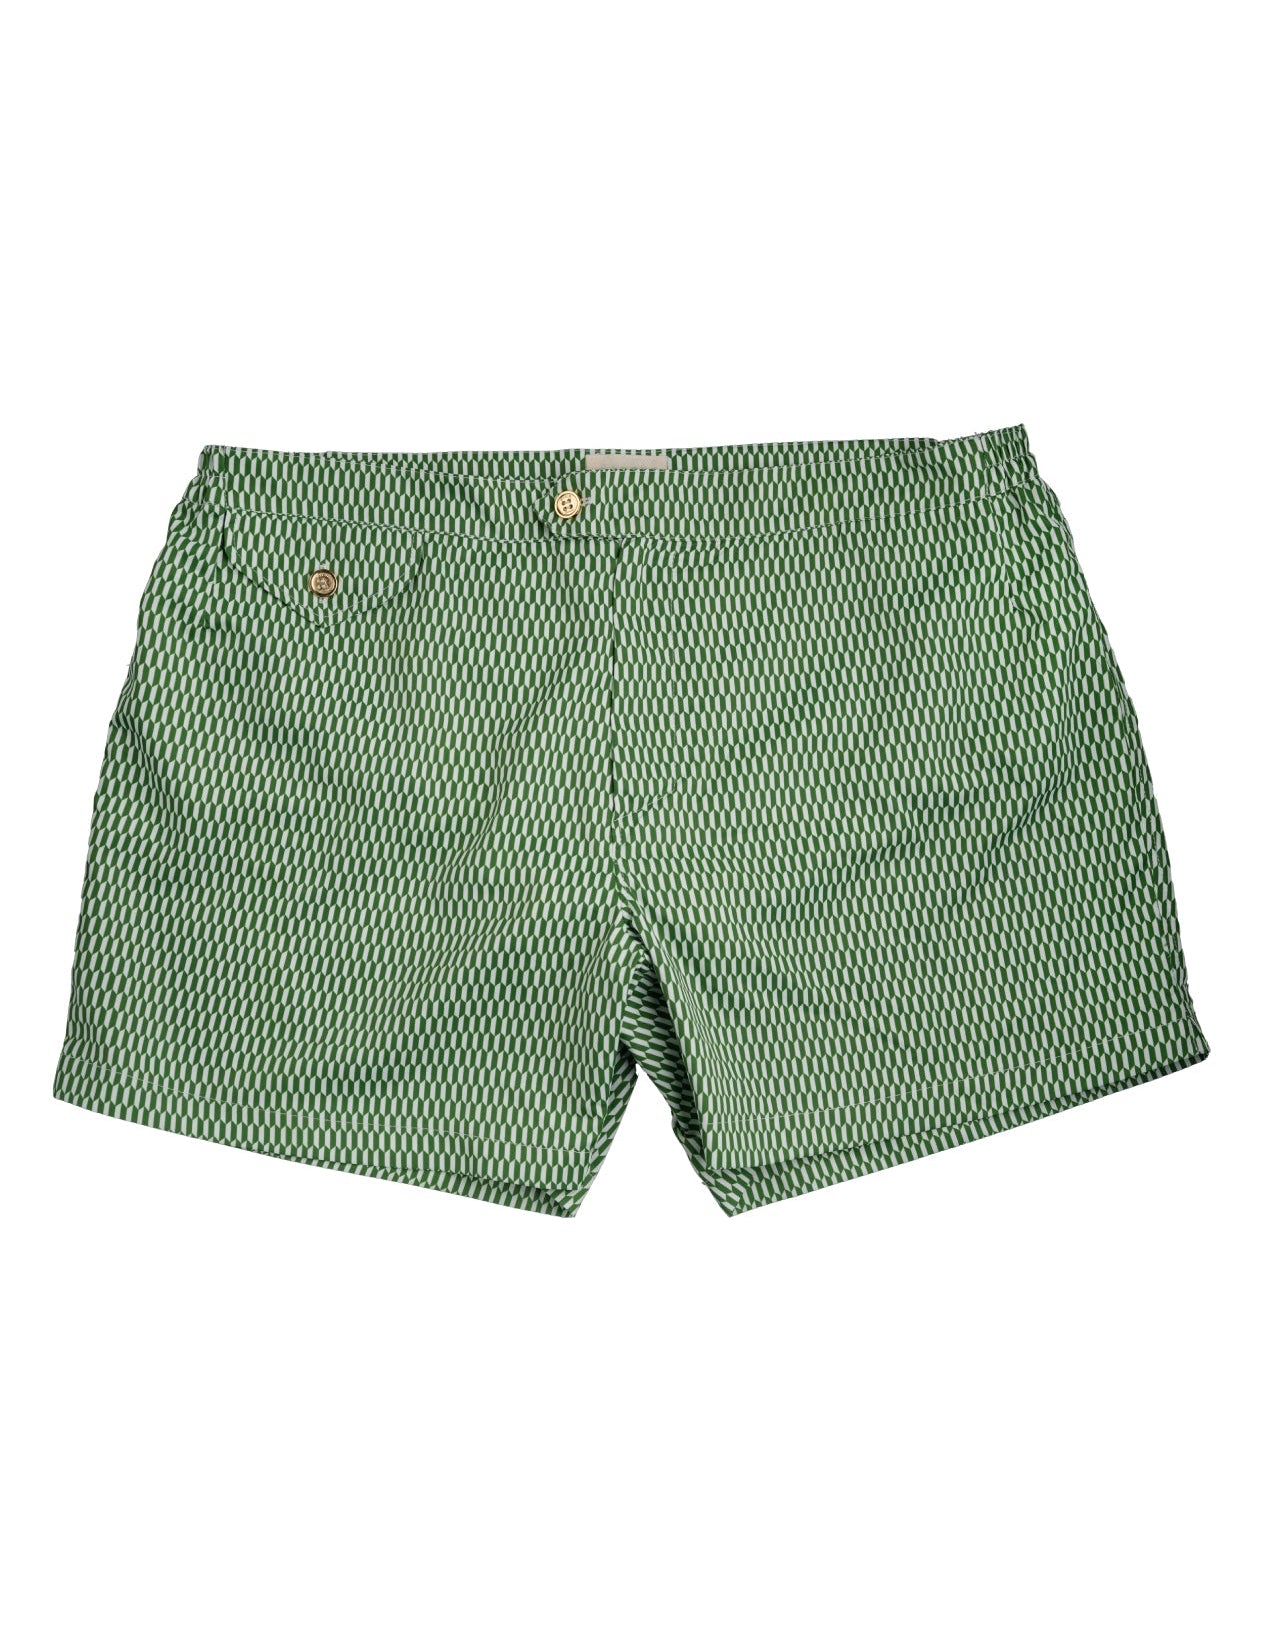 mens-swimming-trunks-marcello-optical-green-fronte.jpg